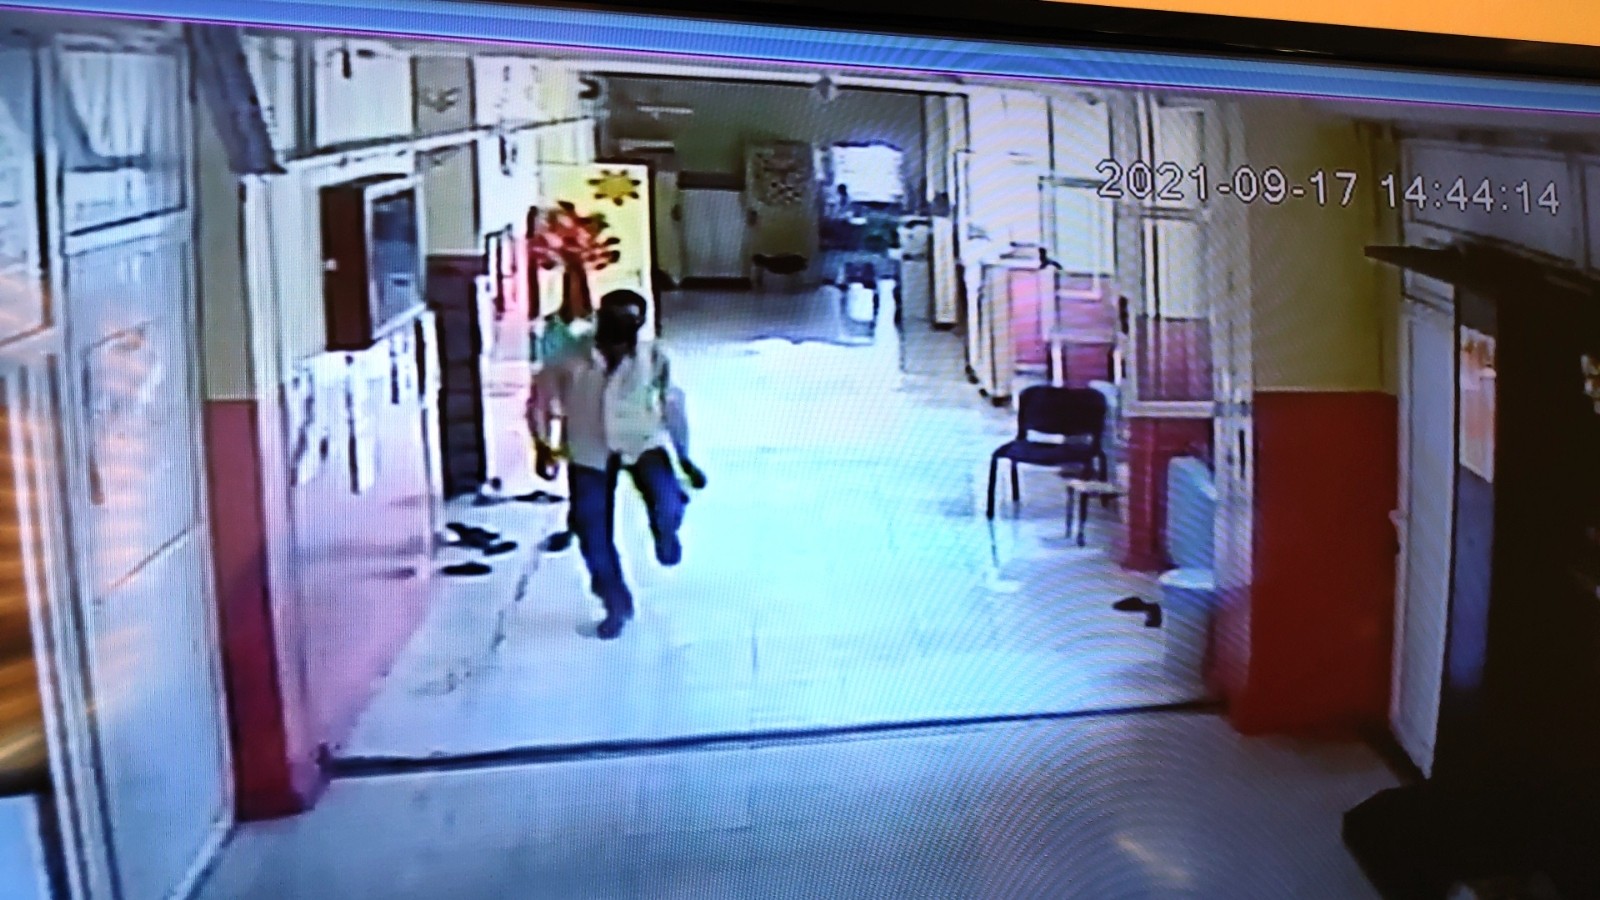 Stajyer öğrenci cep telefonunu çalan hırsızı kovaladı